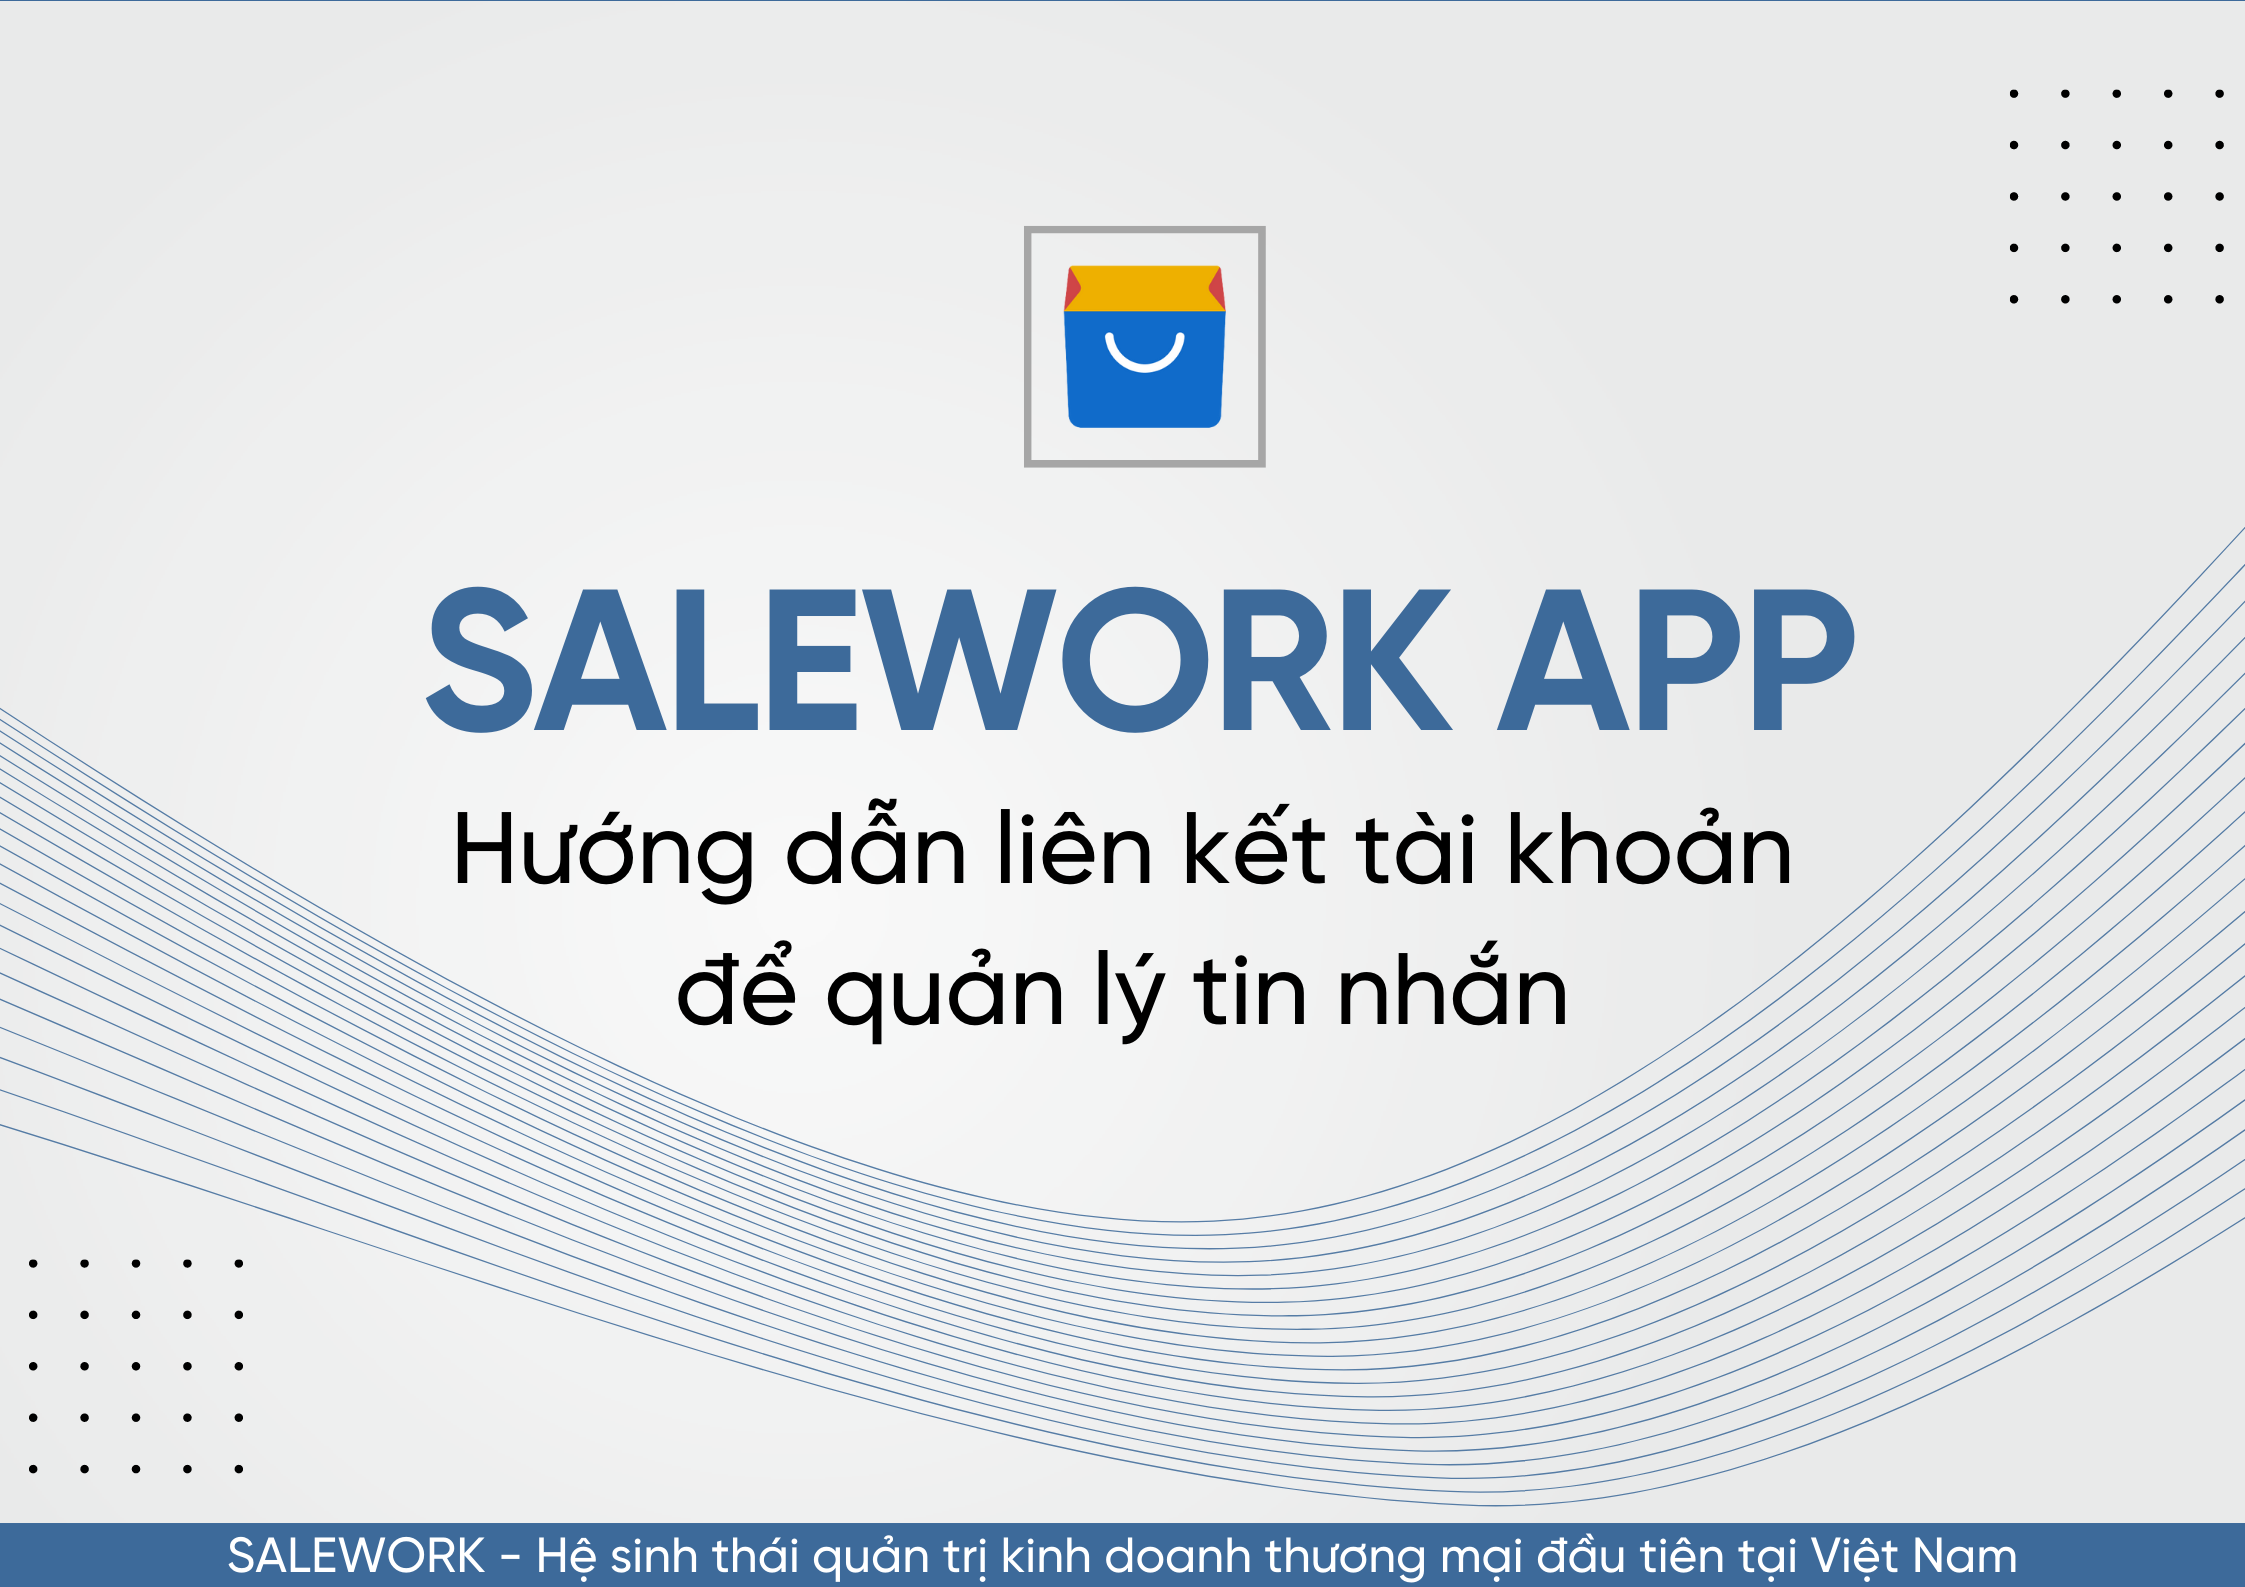 Hướng dẫn liên kết tài khoản để quản lý tin nhắn qua Salework Mobile - 61